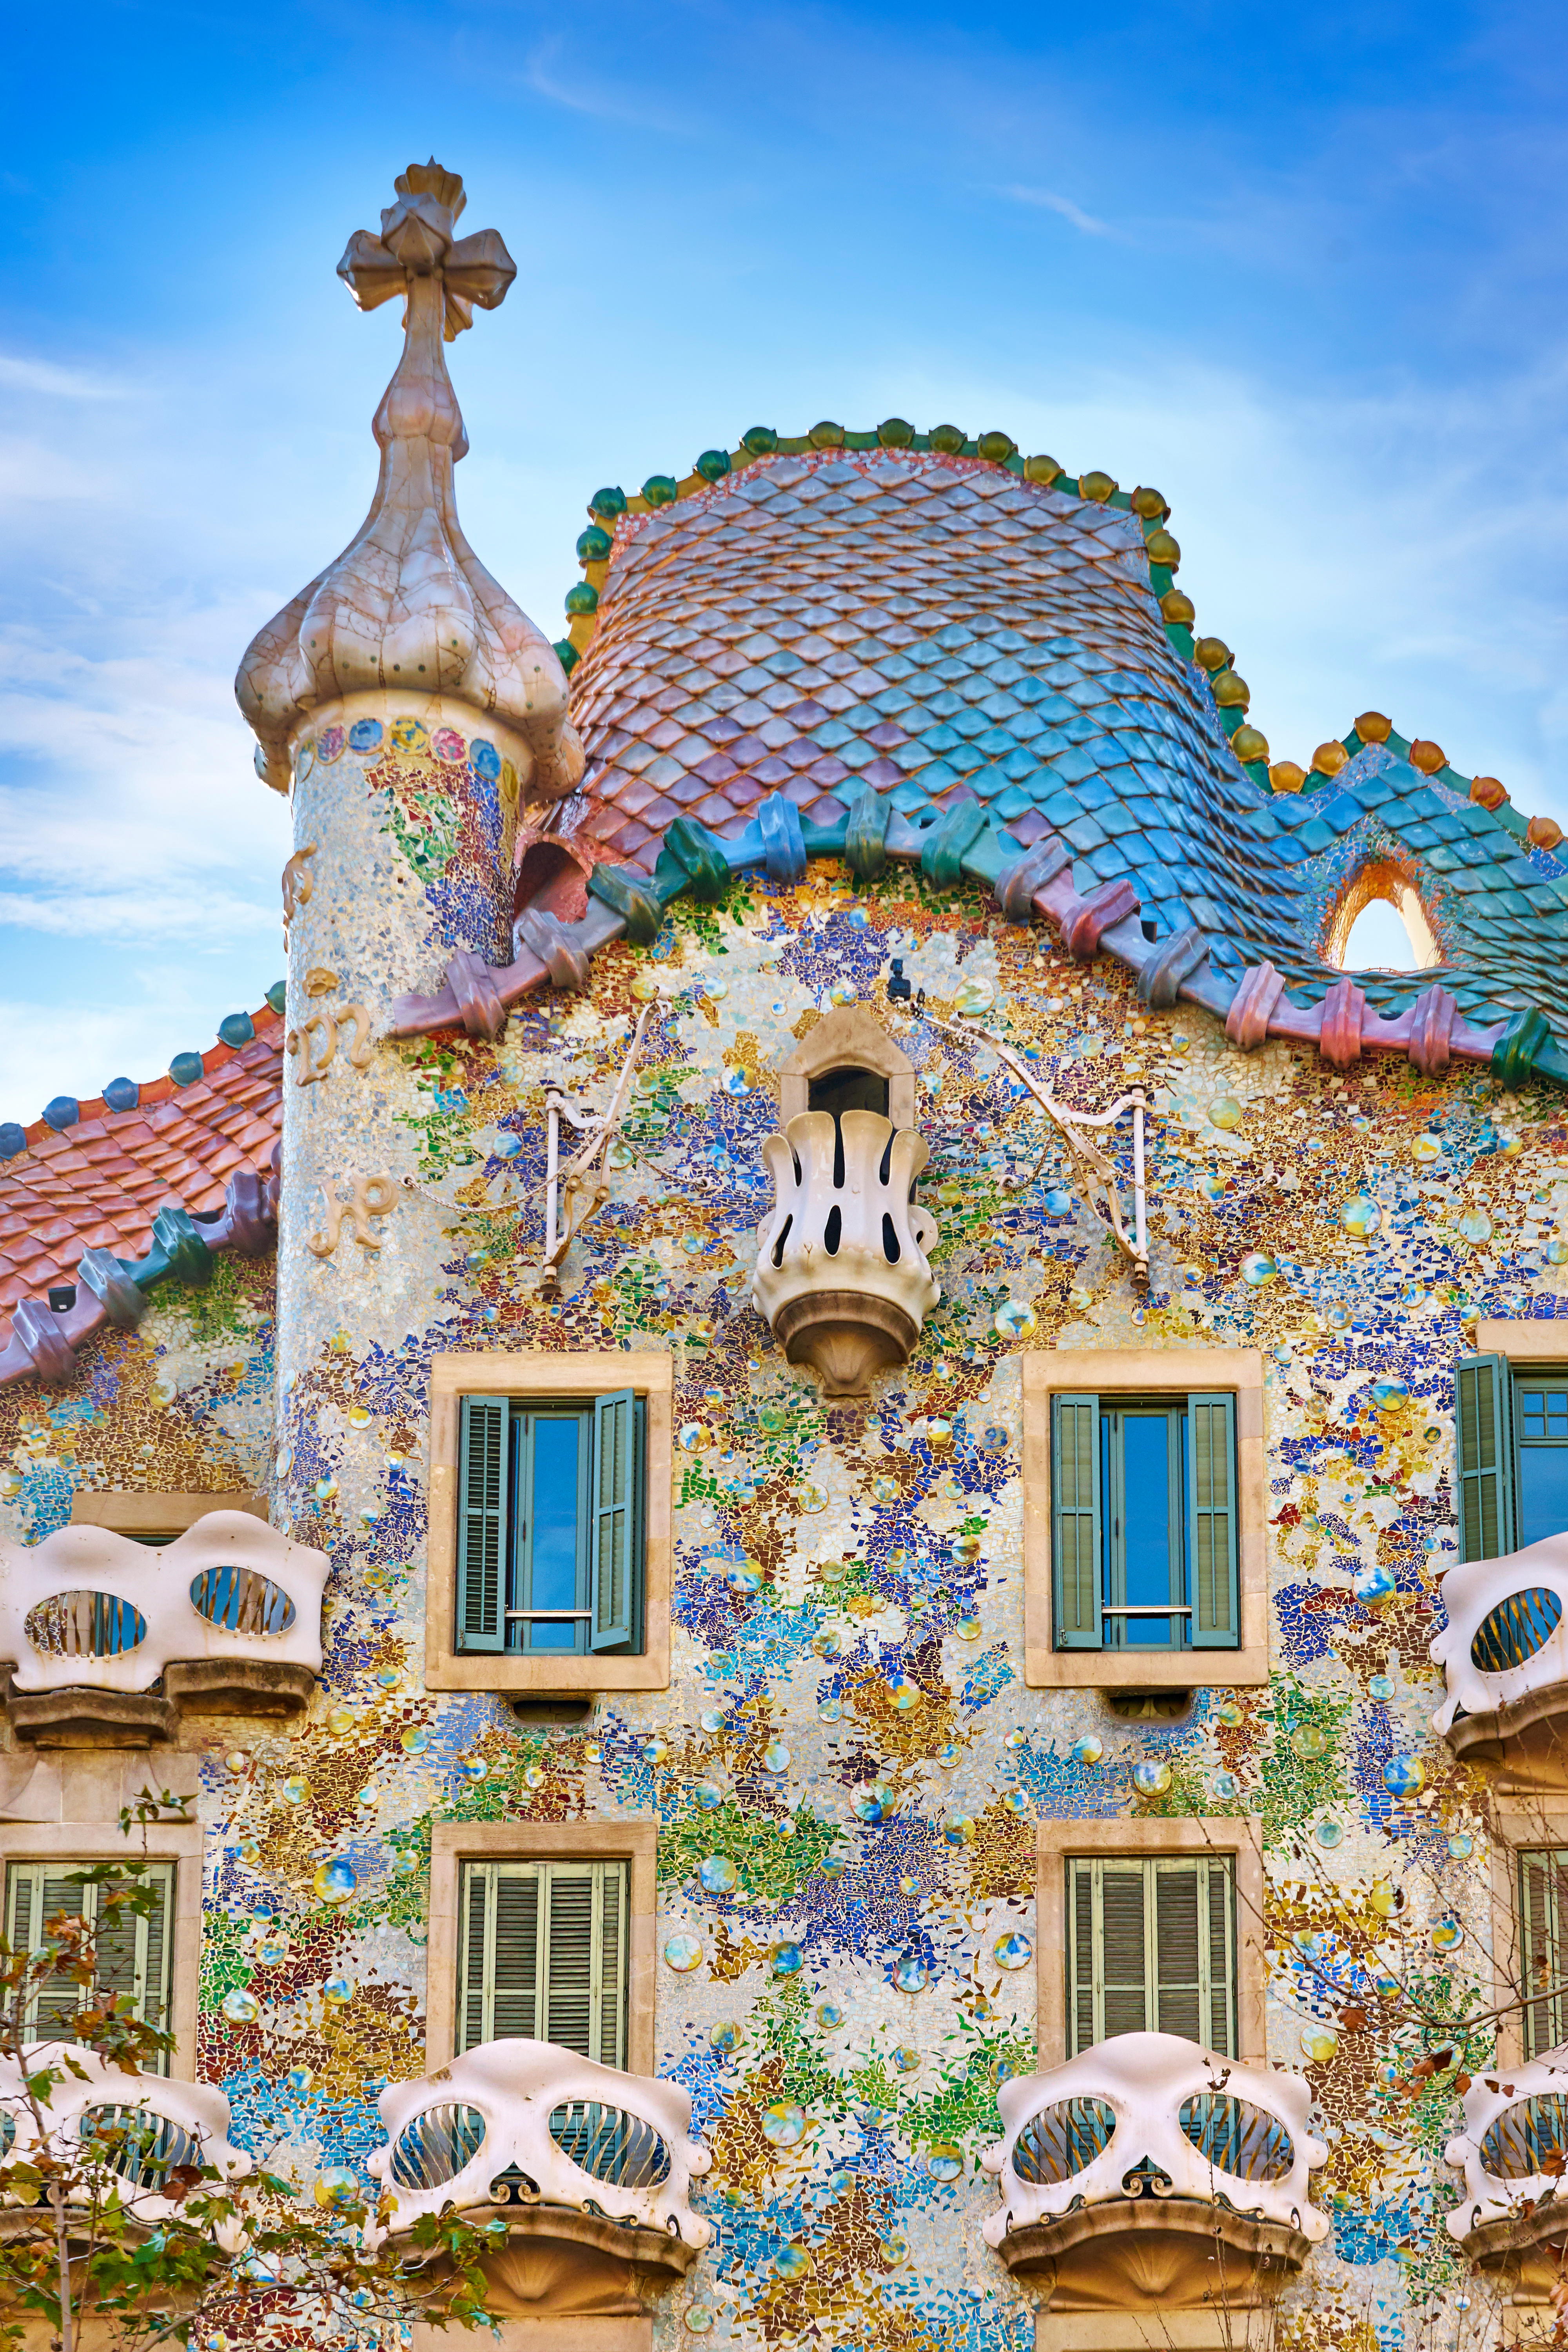 Barcelona – Casa Batllo house design by Antonio Gaudi, Spain